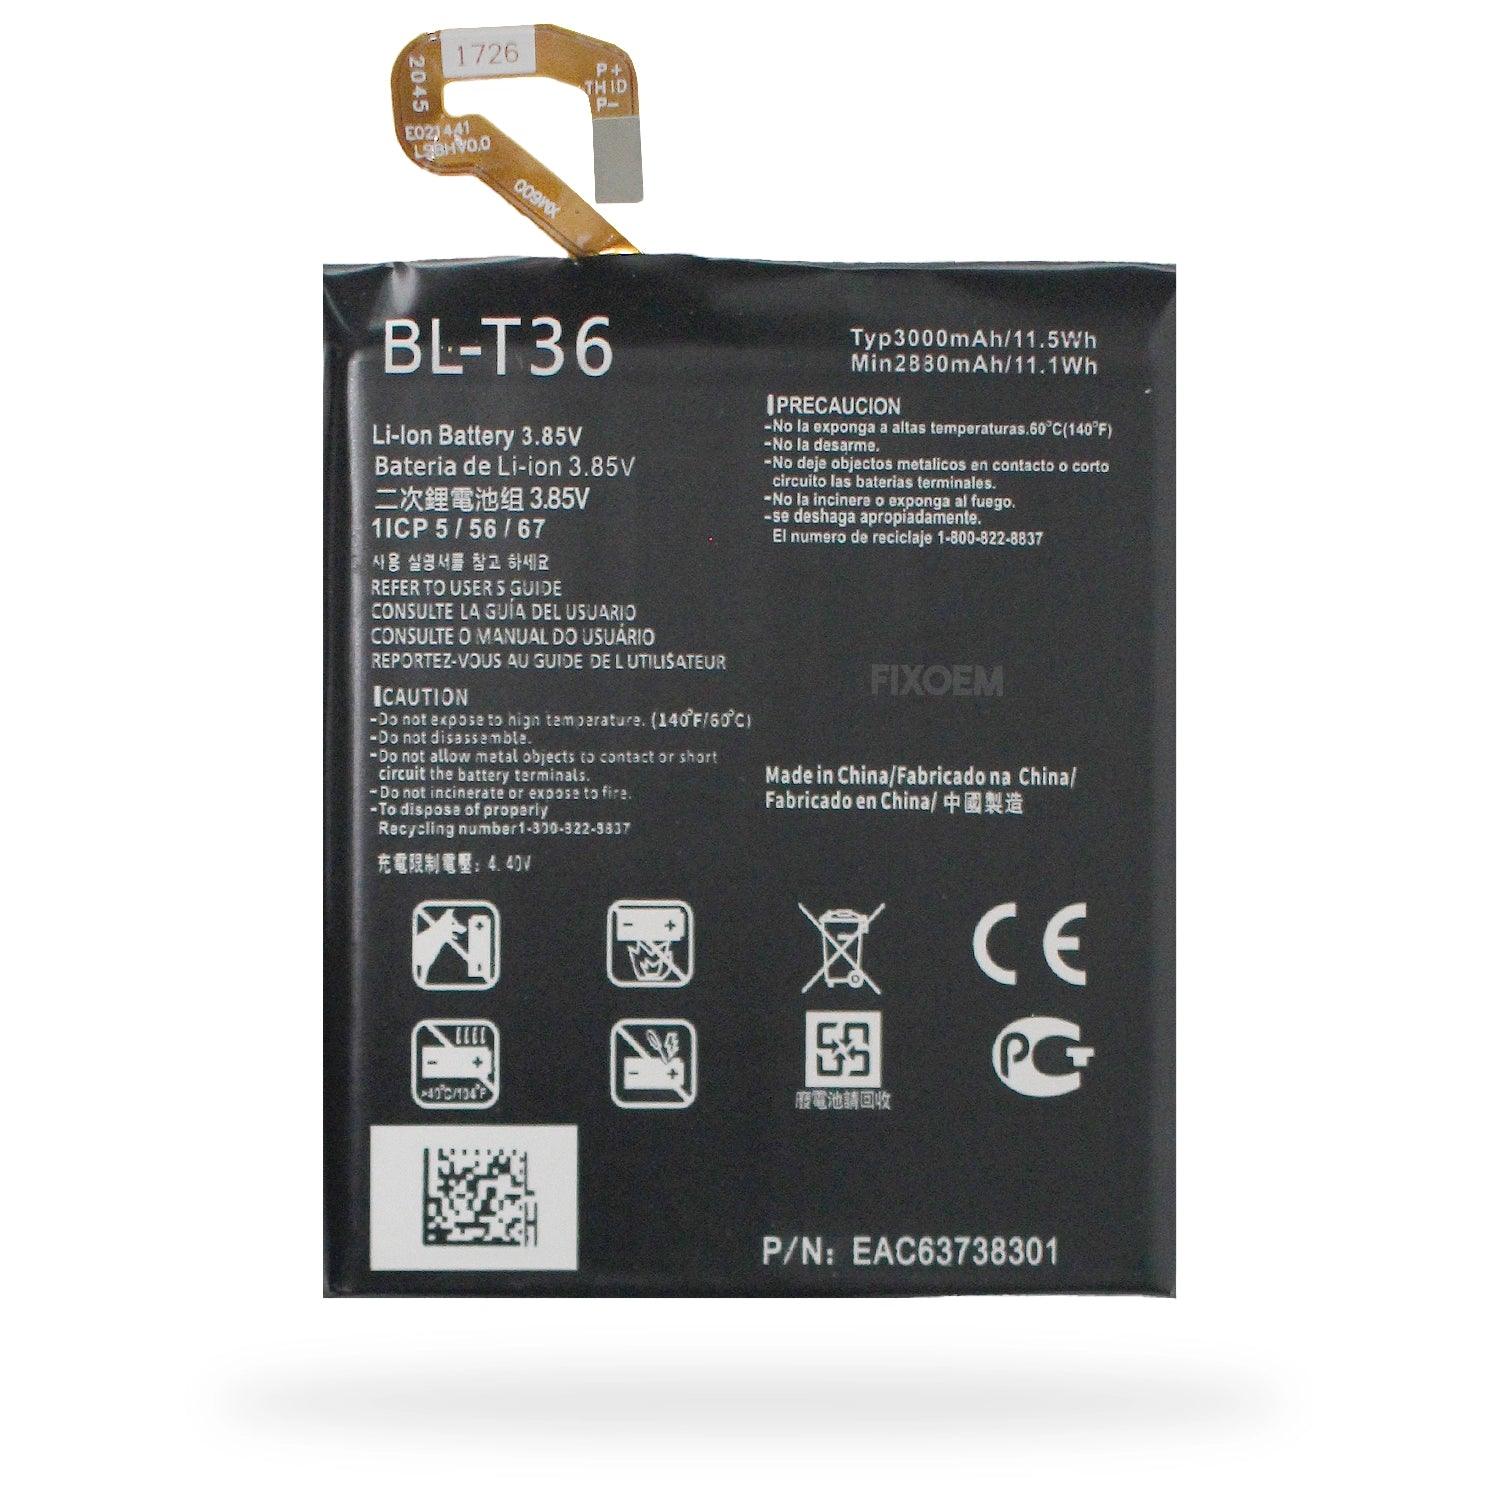 Bateria LG K10 2018 / K30 / K11 2018 Bl-T36. a solo $ 130.00 Refaccion y puestos celulares, refurbish y microelectronica.- FixOEM